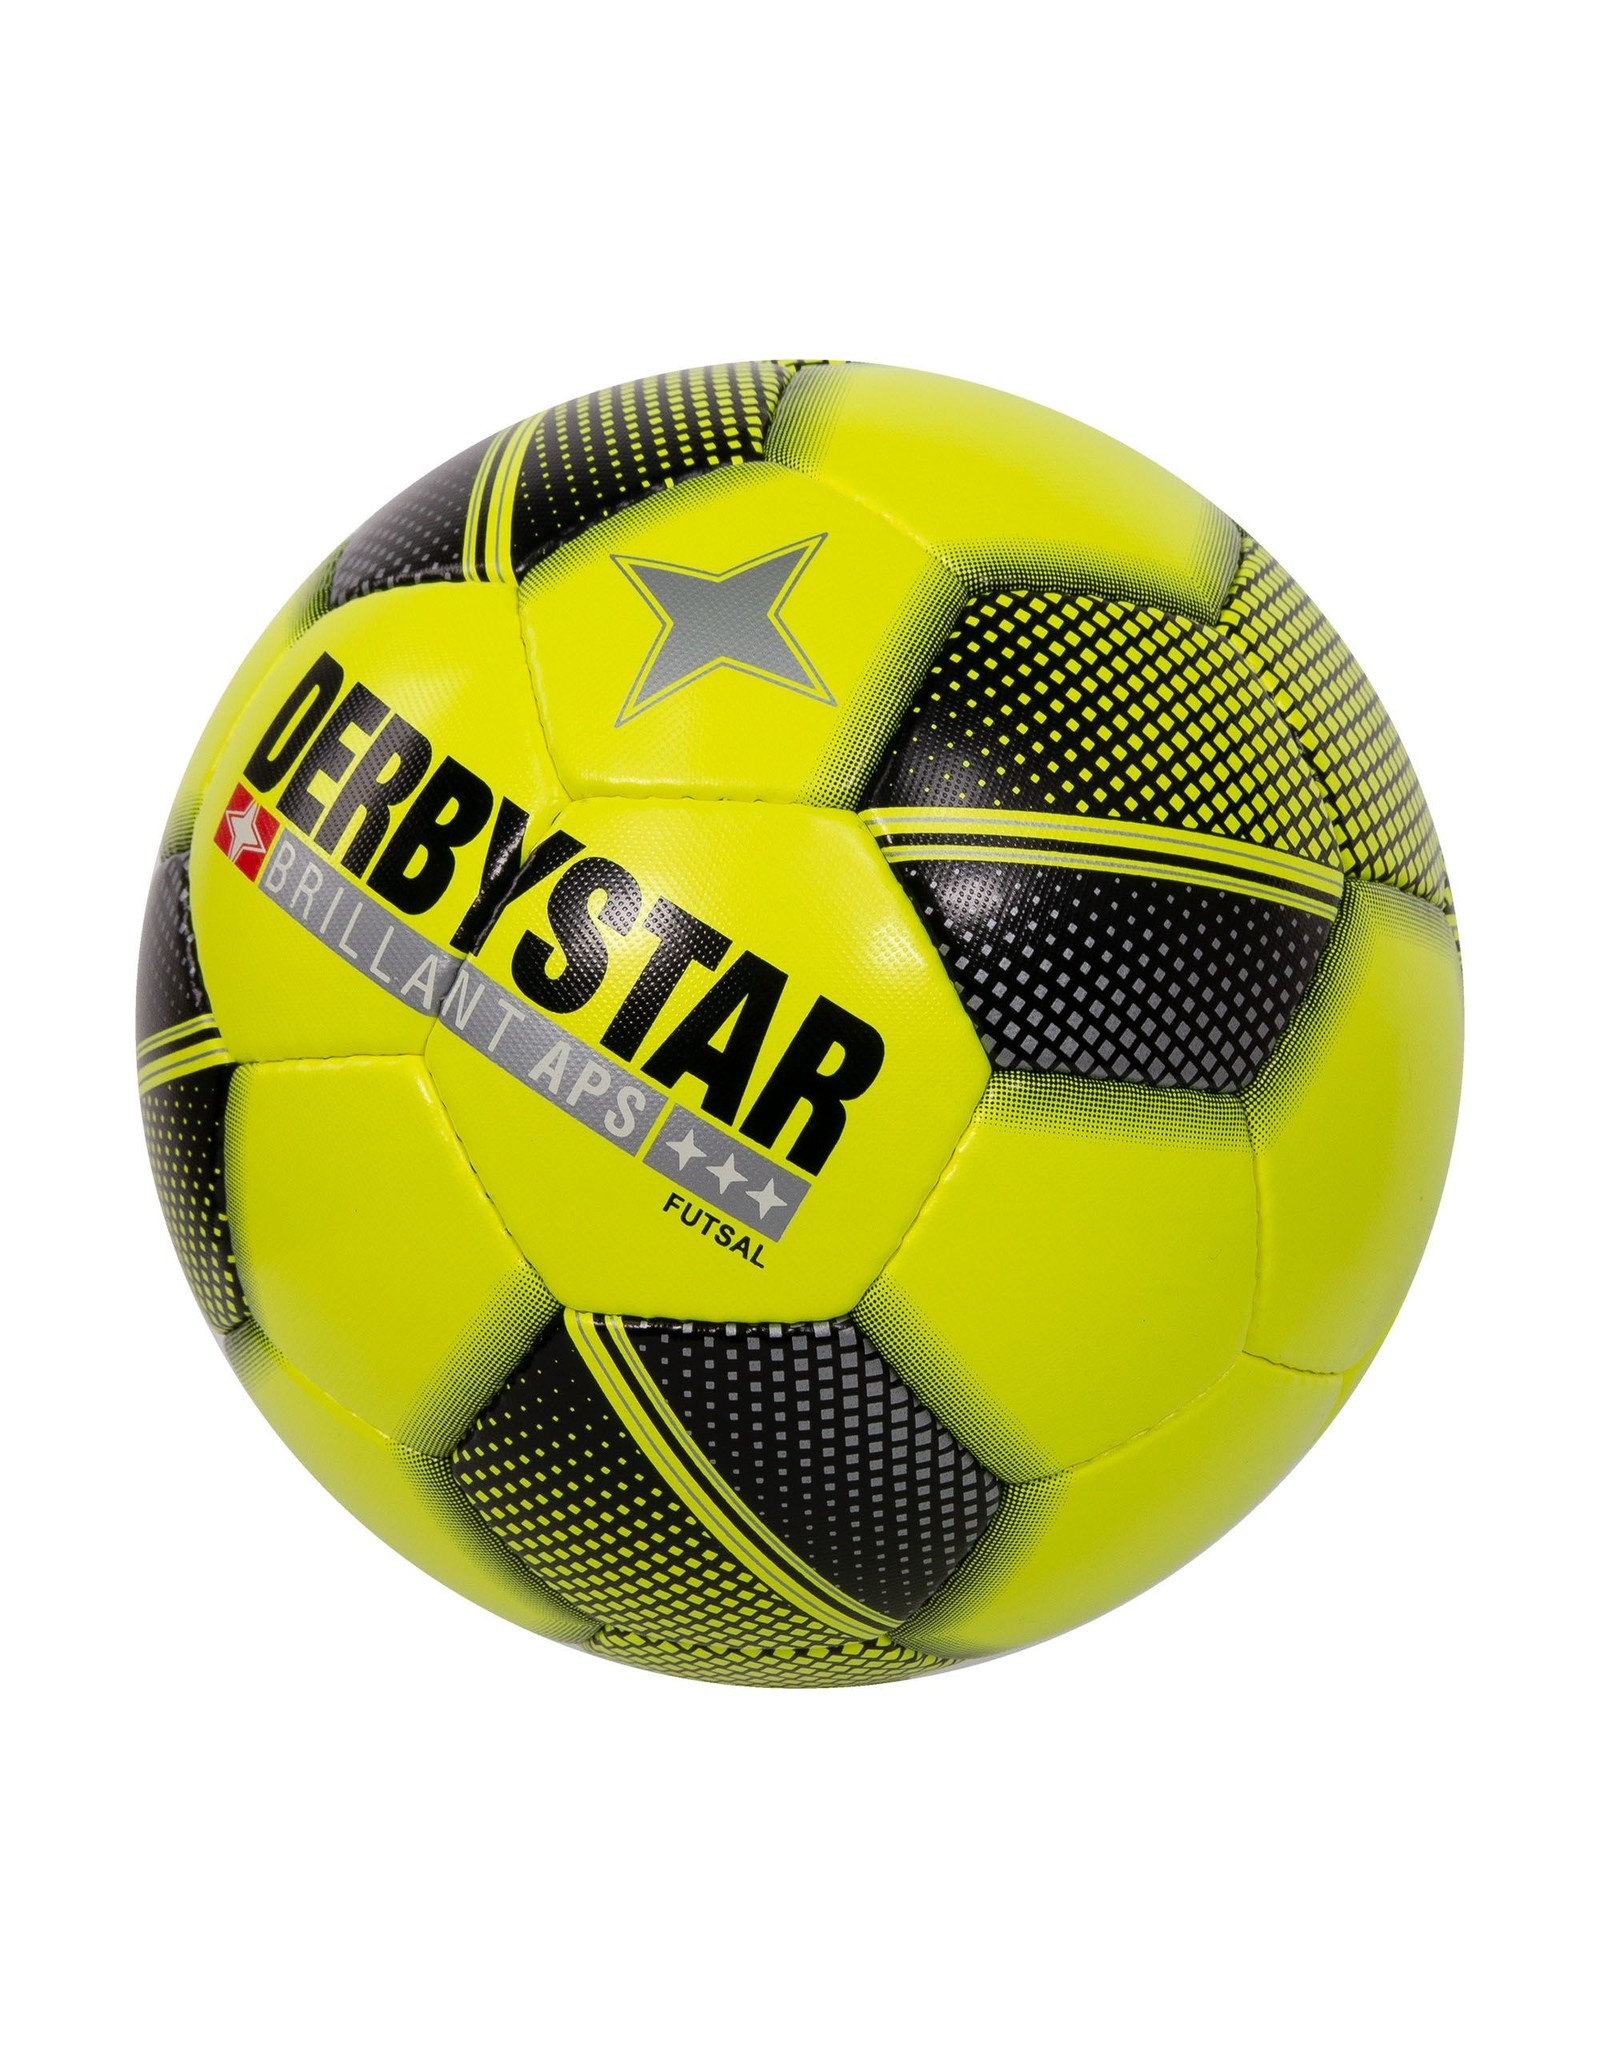 Derbystar Futsal Brillant-Yellow-Black